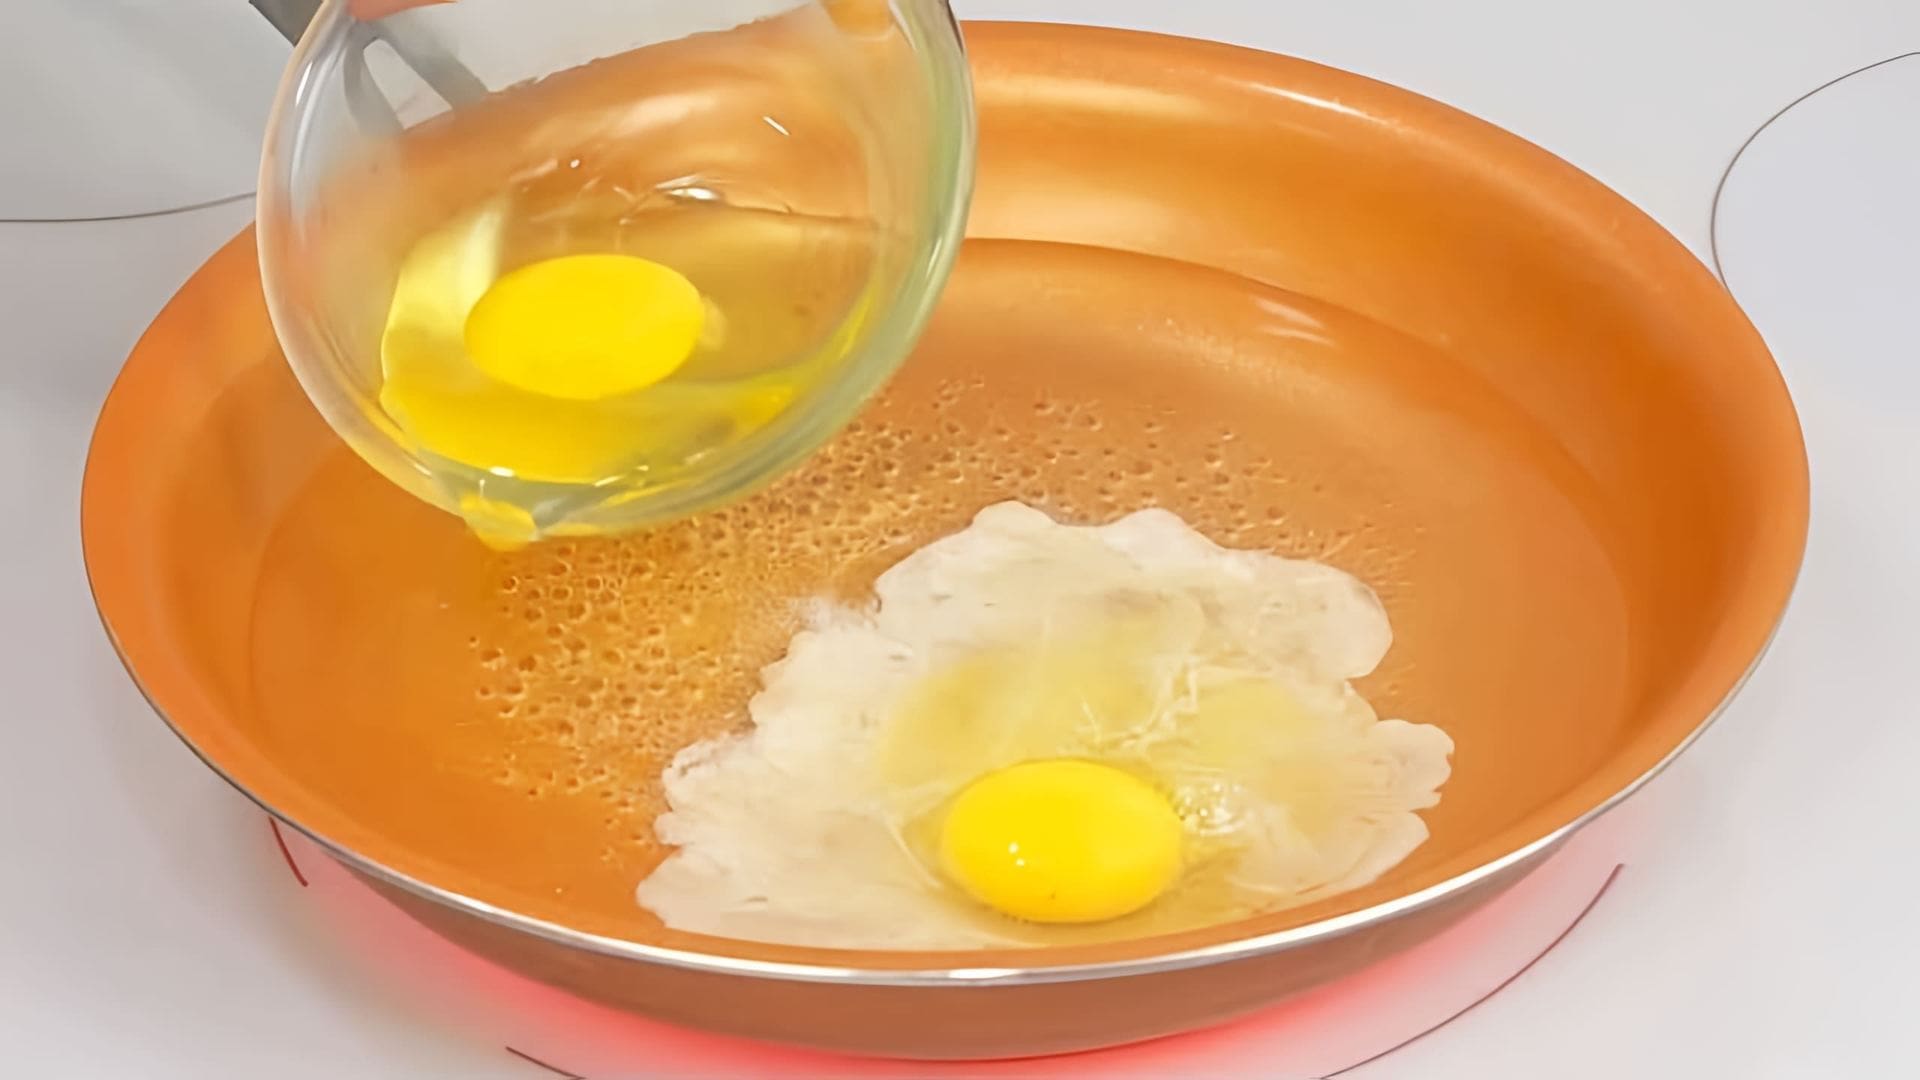 Видео представляет 7 рецептов приготовления омлетов/яичницы интересным способом, чтобы разнообразить завтрак